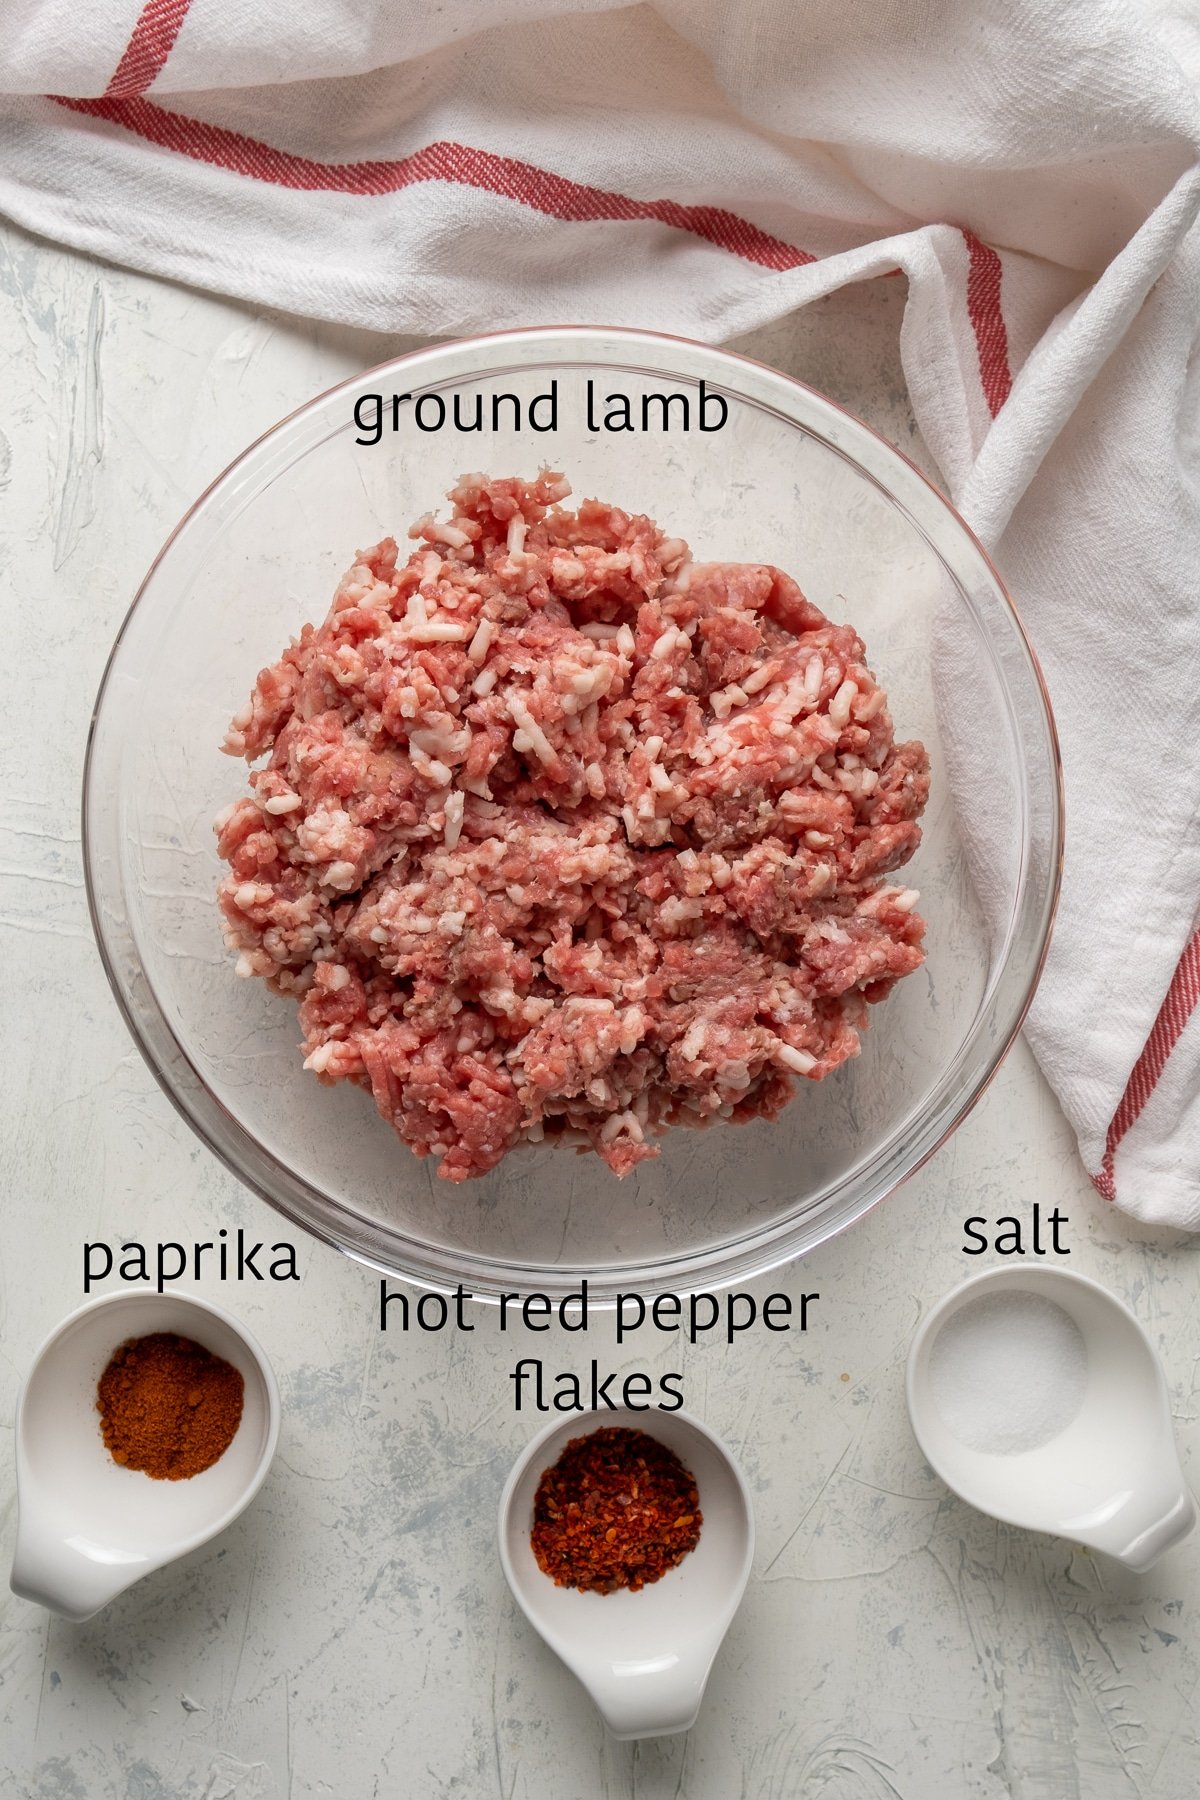 碎羊肉放在玻璃碗里，辣椒粉、红辣椒片和盐分别放在旁边的碗里。